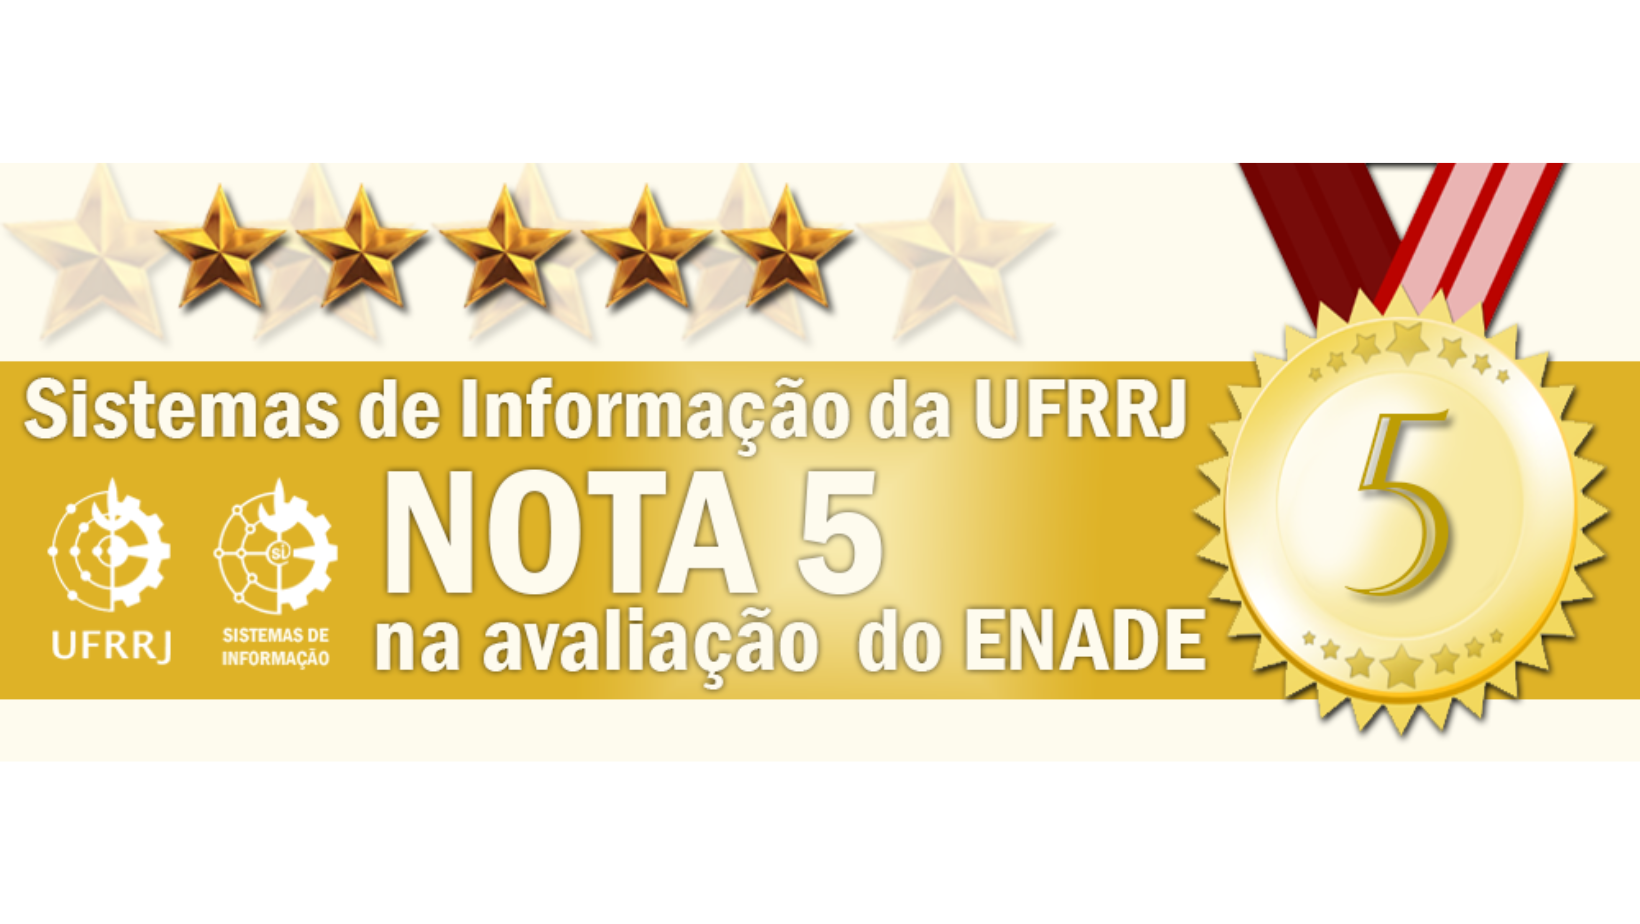 Sistemas de Informação da UFRRJ tem nota máxima no ENADE